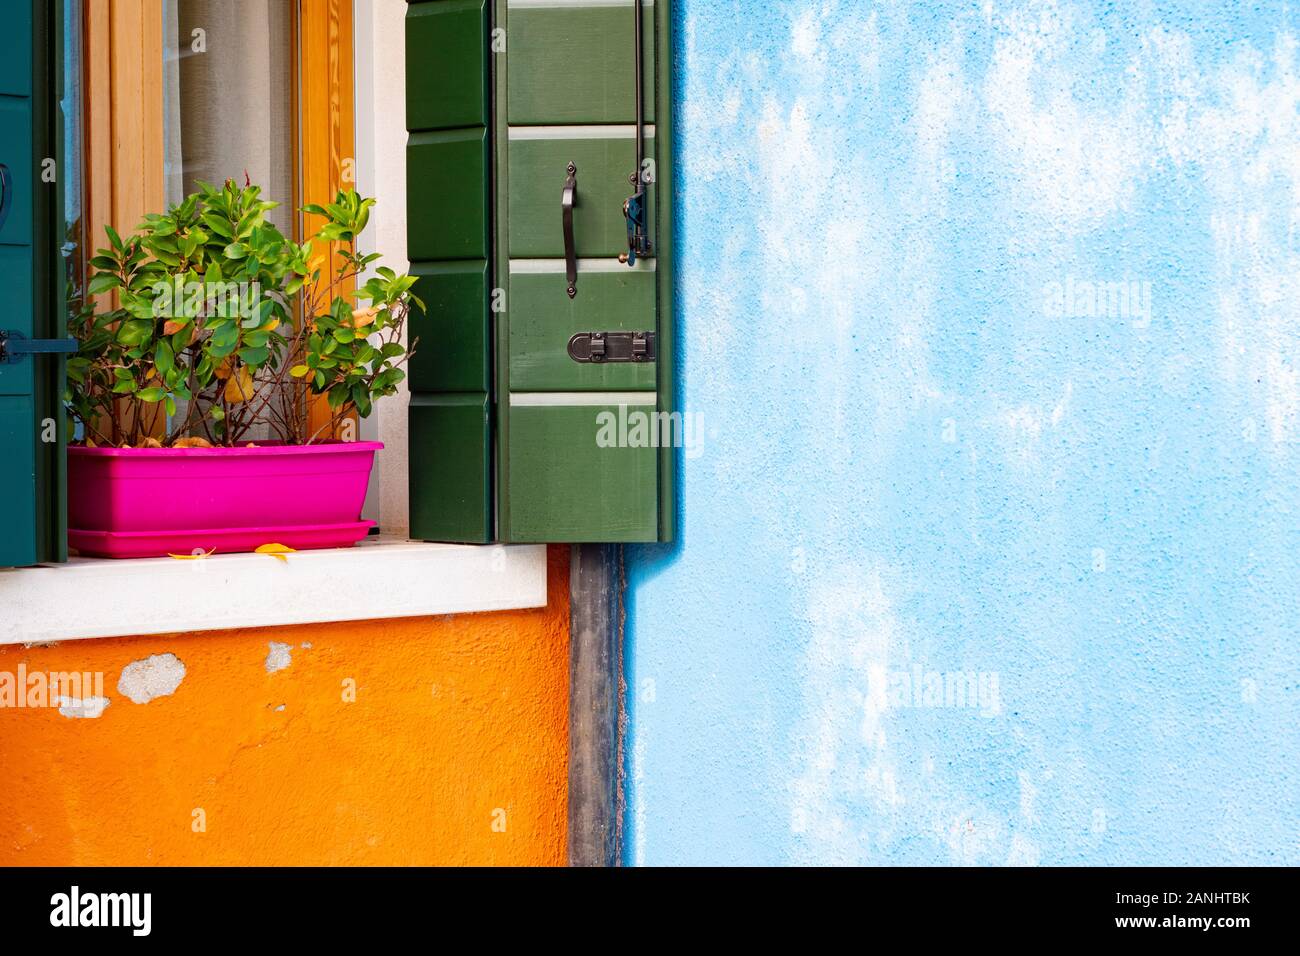 Façade de maison coloré en pointillés bleus italie pot de fleur rose mur murs orange, des volets verts, l'obturateur en bois design italien, joli concept burano Banque D'Images